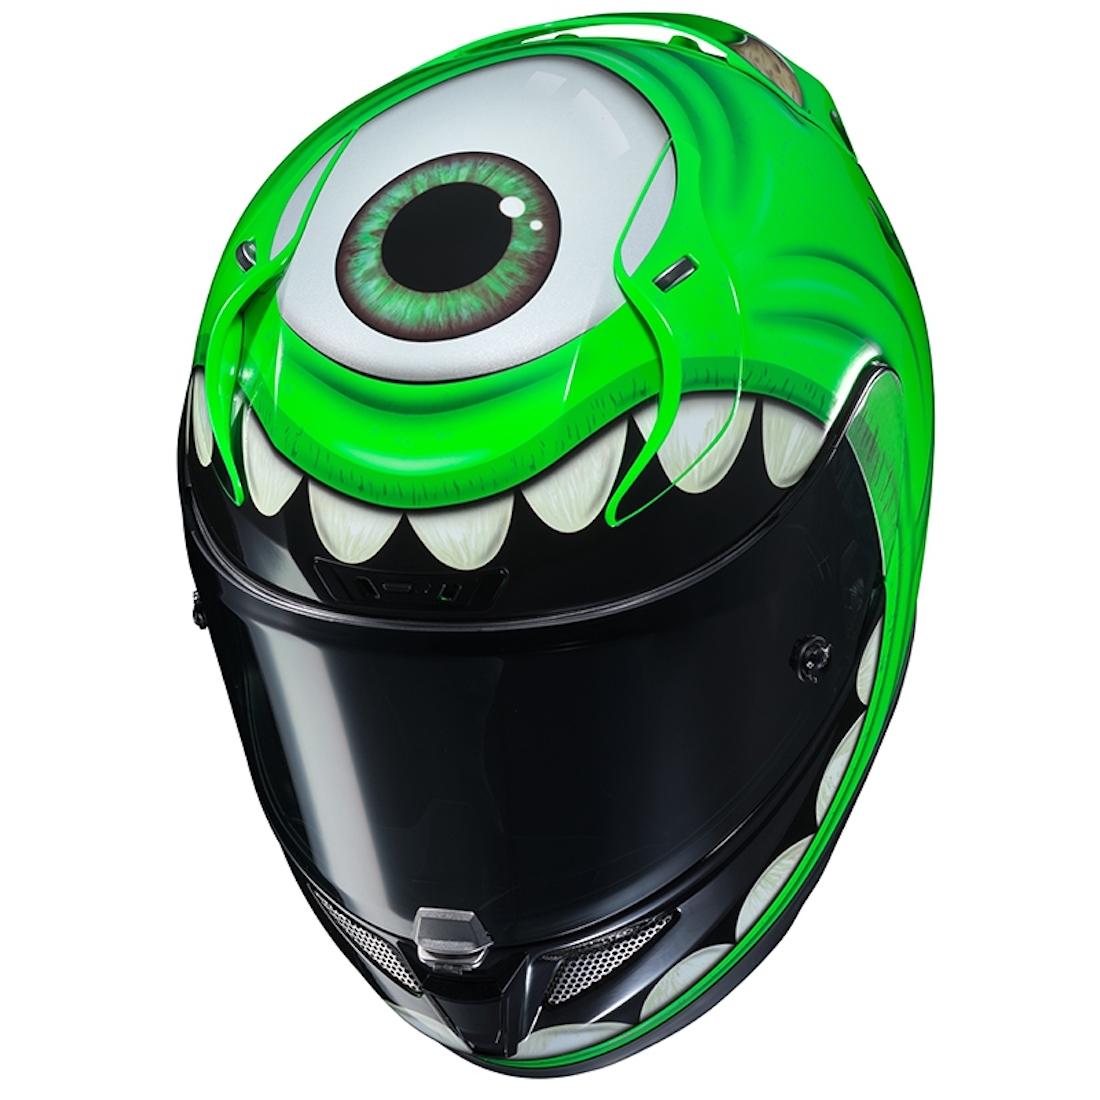 New Monsters Inc HJC RPHA 11 helmet unveiled | Visordown